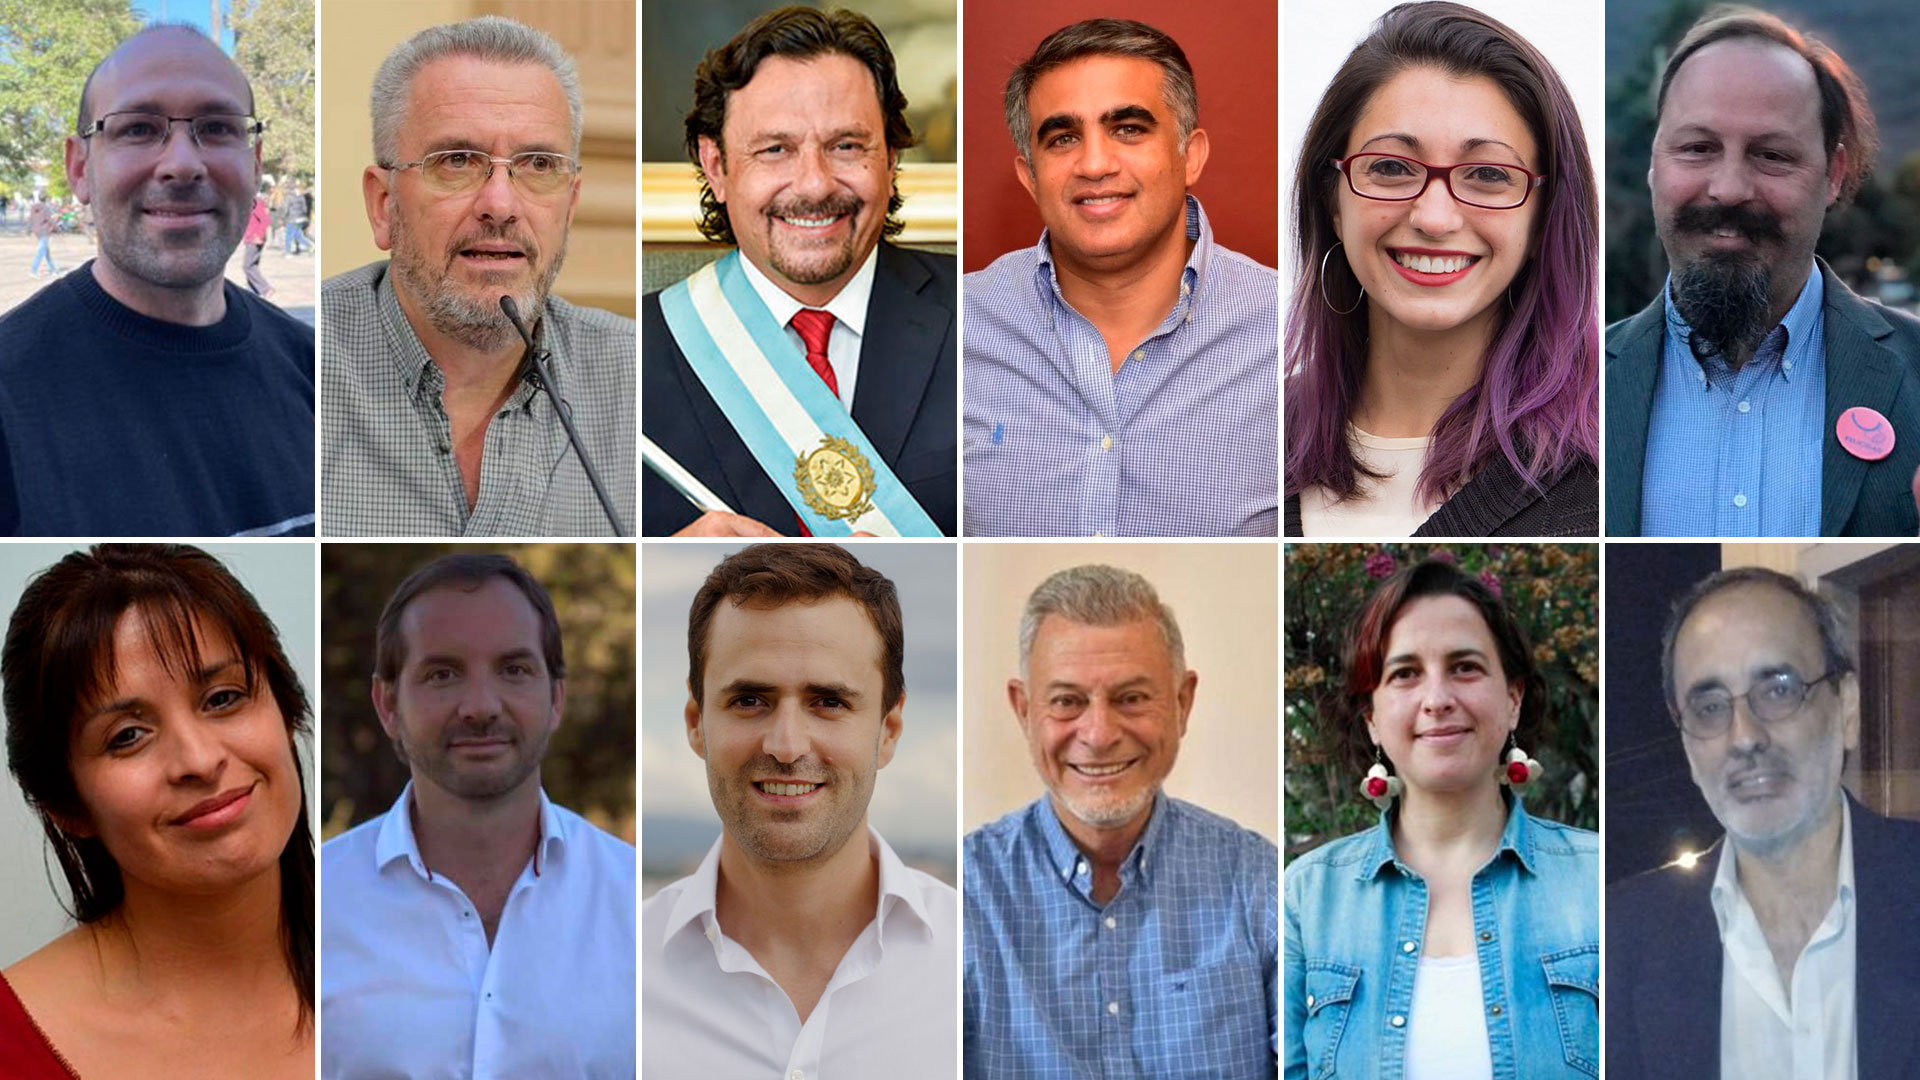 Serán 12 los candidatos a la gobernación de Salta